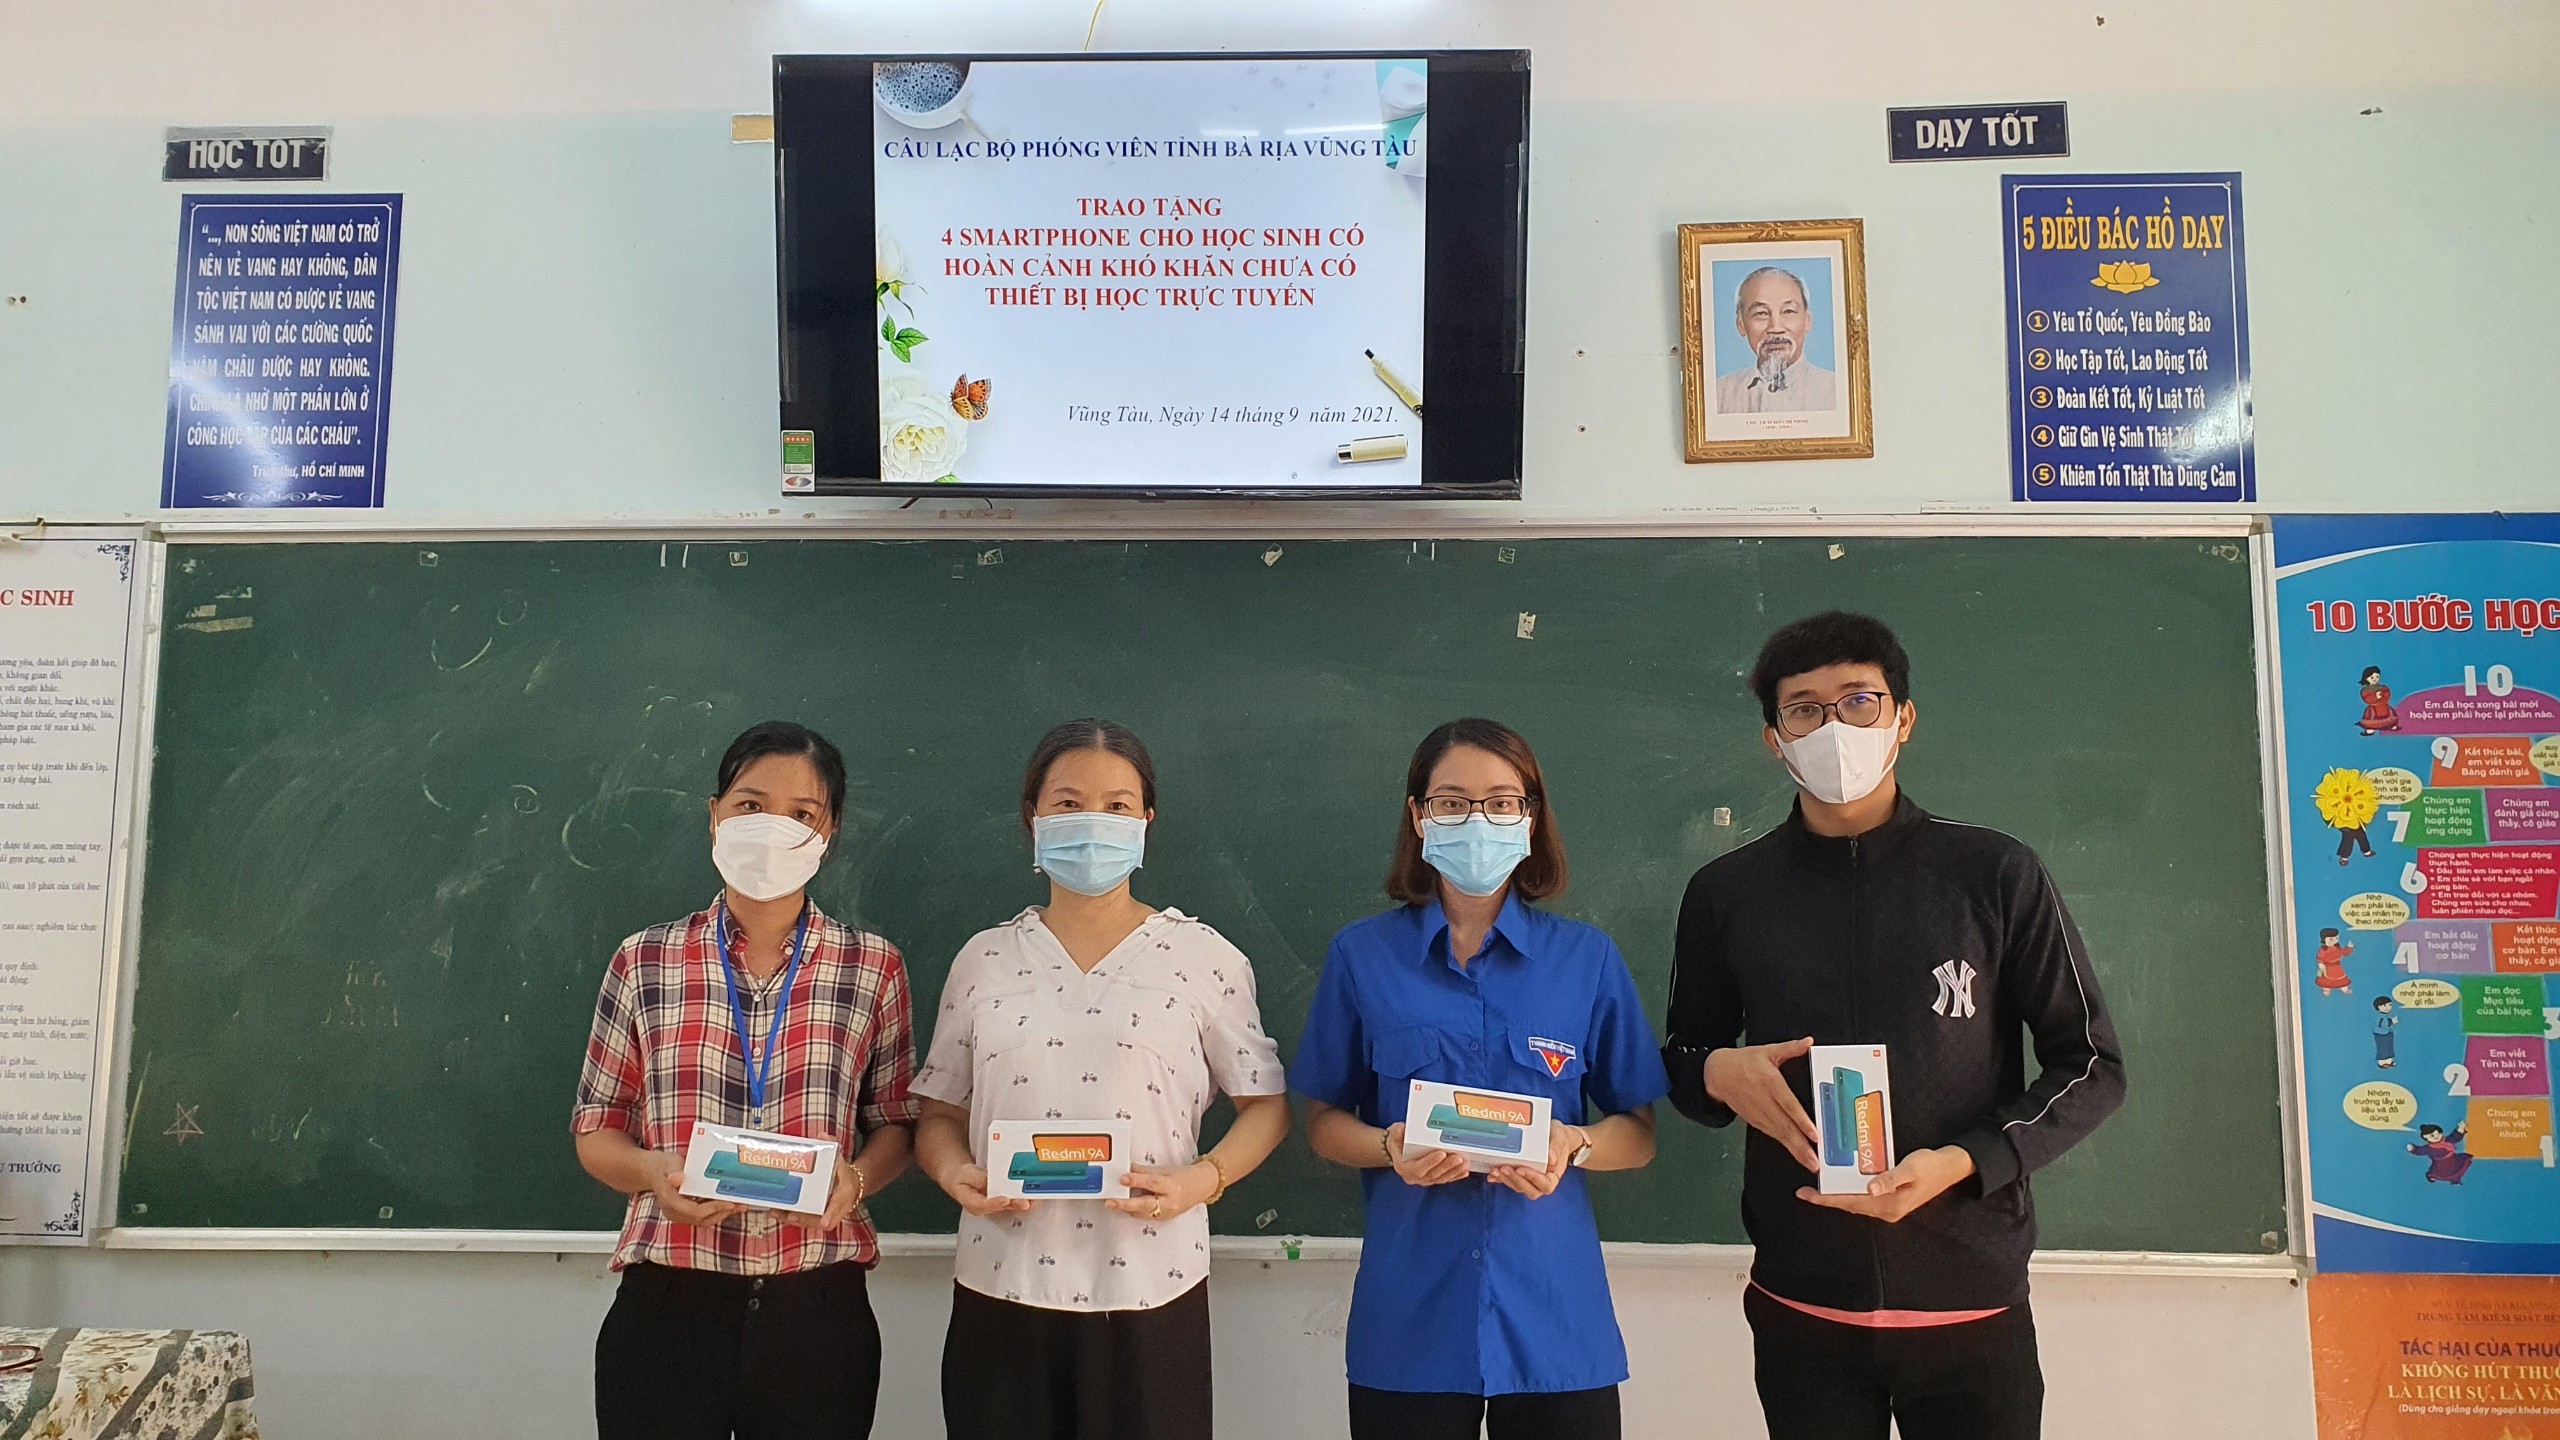  HS có hoàn cảnh khó khăn của Trường THCS Thắng Nhì nhận điện thoại từ các nhà hảo tâm đóng góp cho Quỹ Chung một tấm lòng CLB  Phóng viên BR-VT.